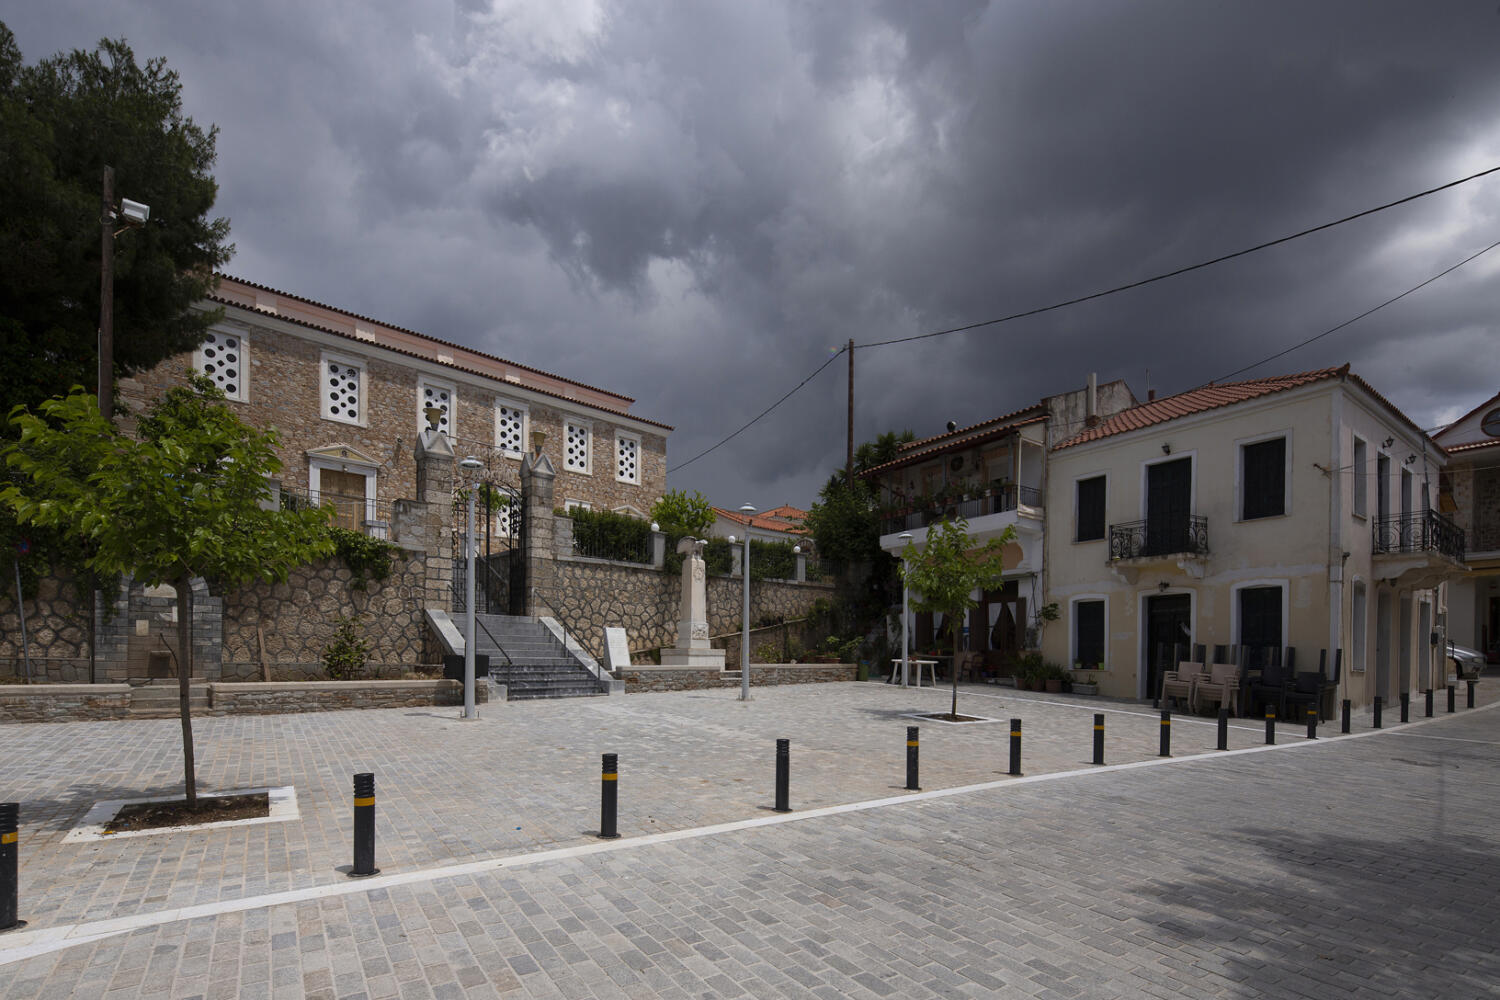 Ναός Όσιου Λουκά και Πλατεία, χωριό Άγιος Λουκάς. Φωτογραφία: ©Βασίλης Συκάς, για τον Δήμο Κύμης-Αλιβερίου